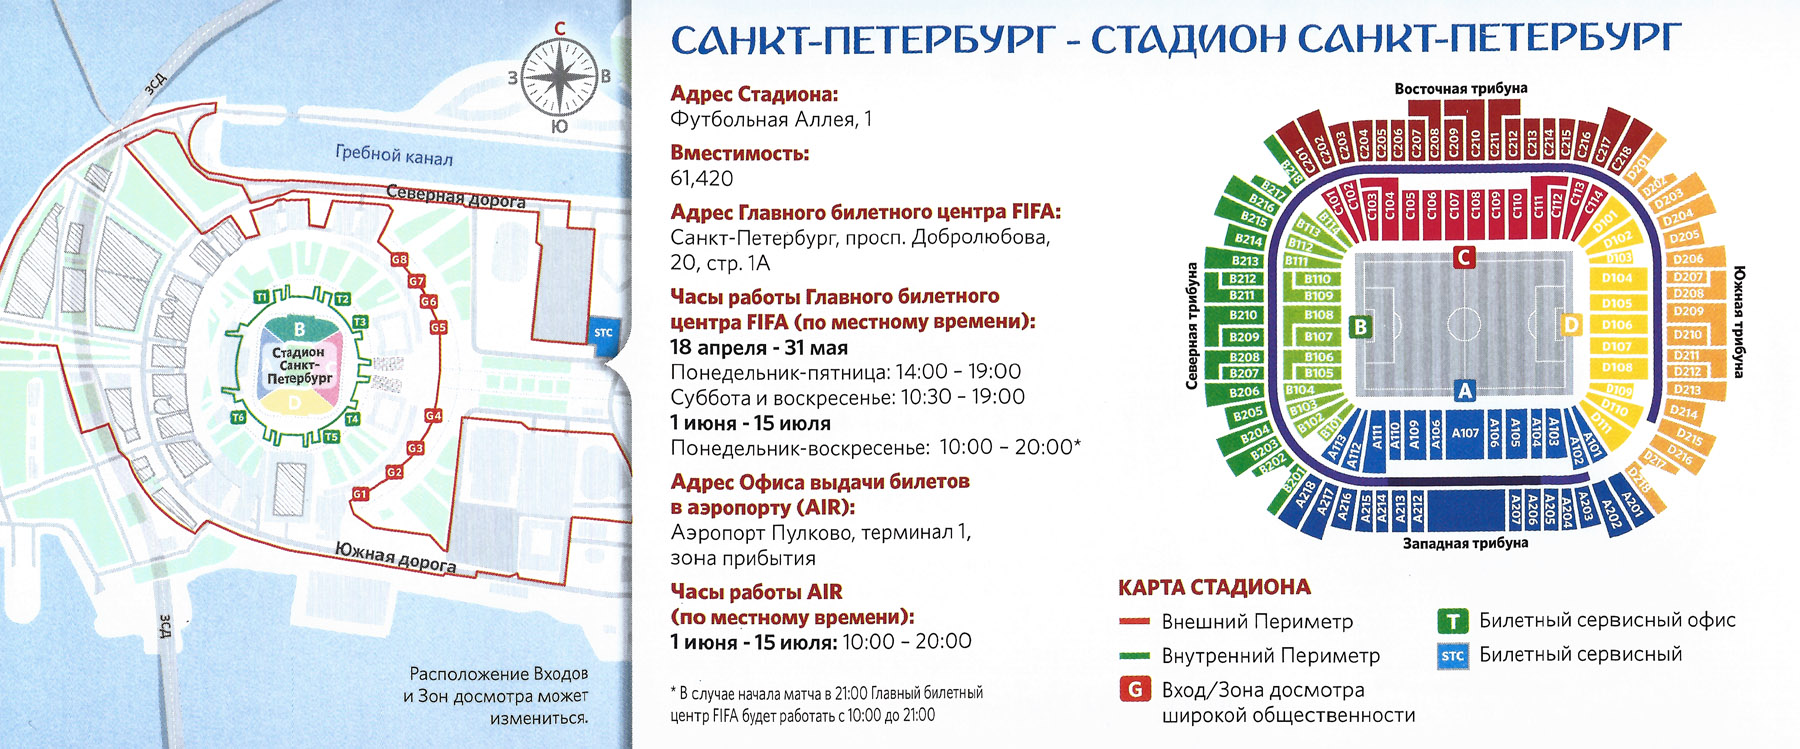 Зенит арена билеты спб. Стадион Зенит Арена Санкт-Петербург сектора. Арена Санкт-Петербург схема секторов.